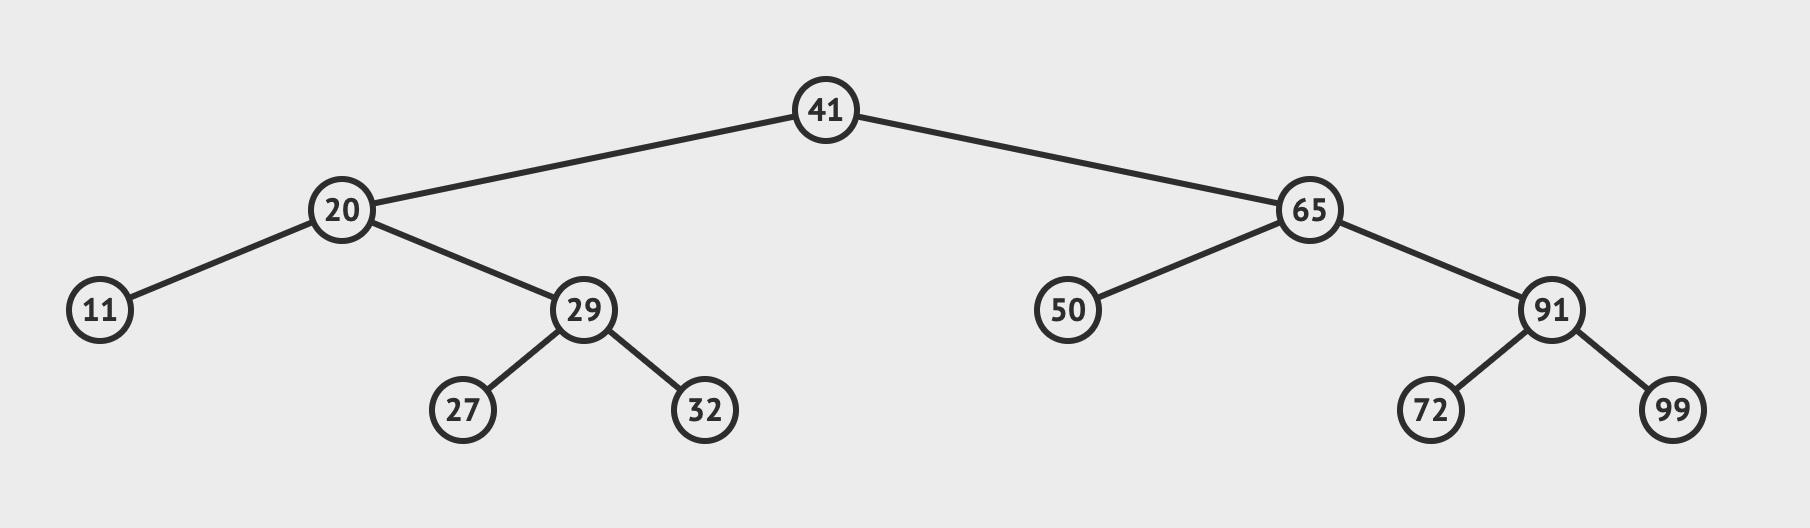 数据结构(二), AVL平衡二叉树 - 文章图片